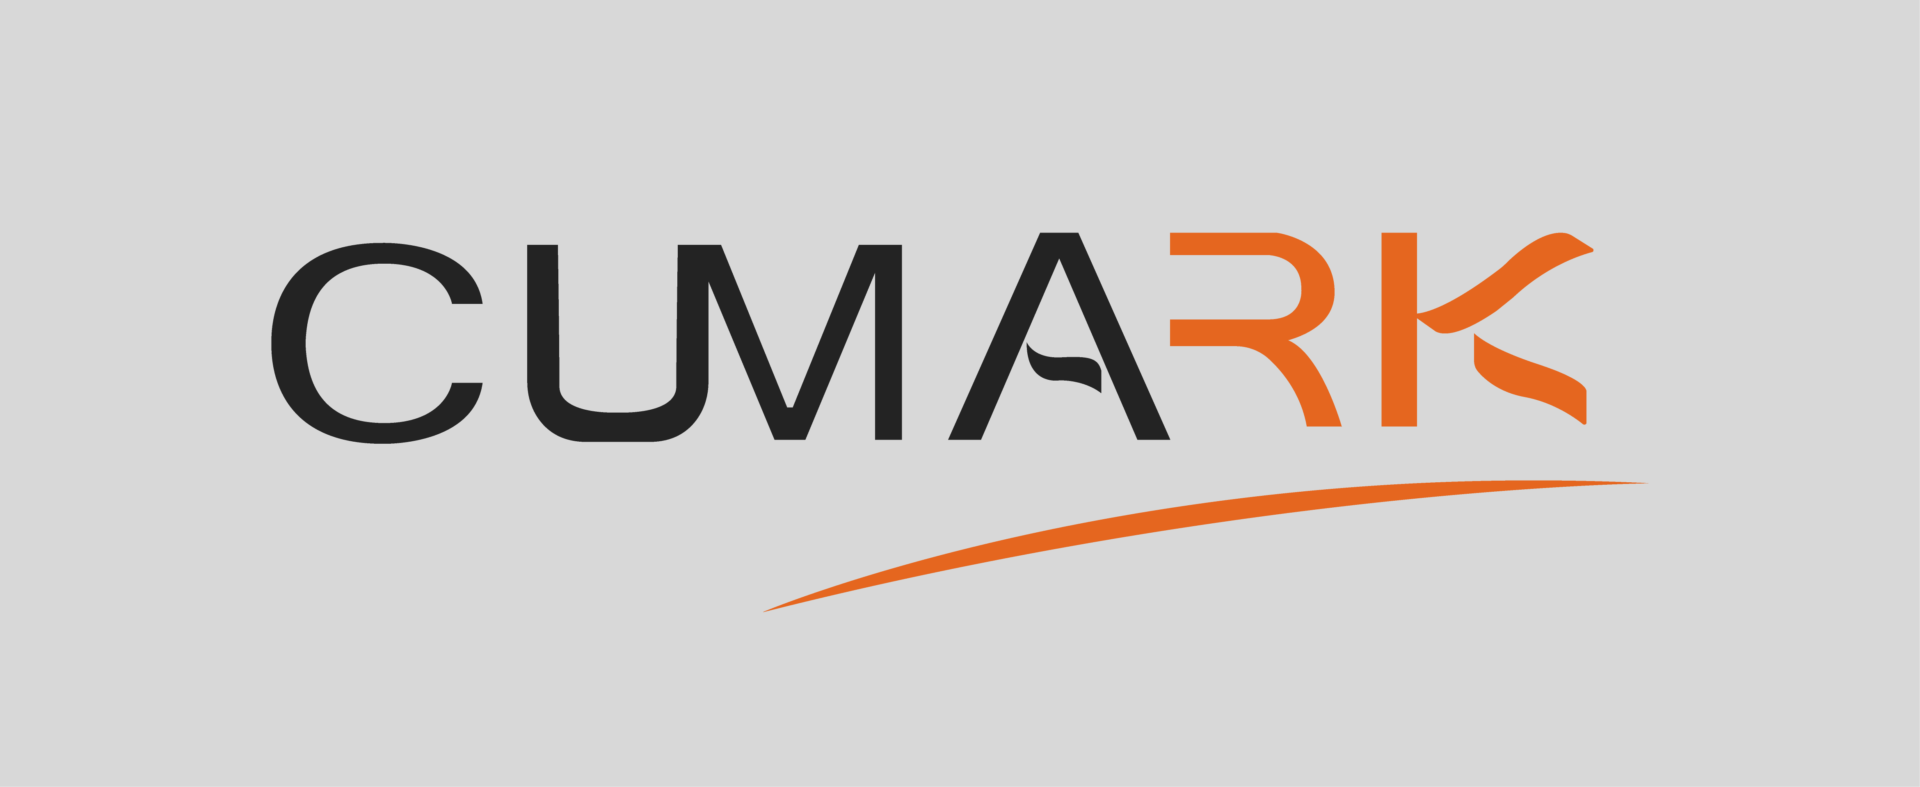 Cumark logo